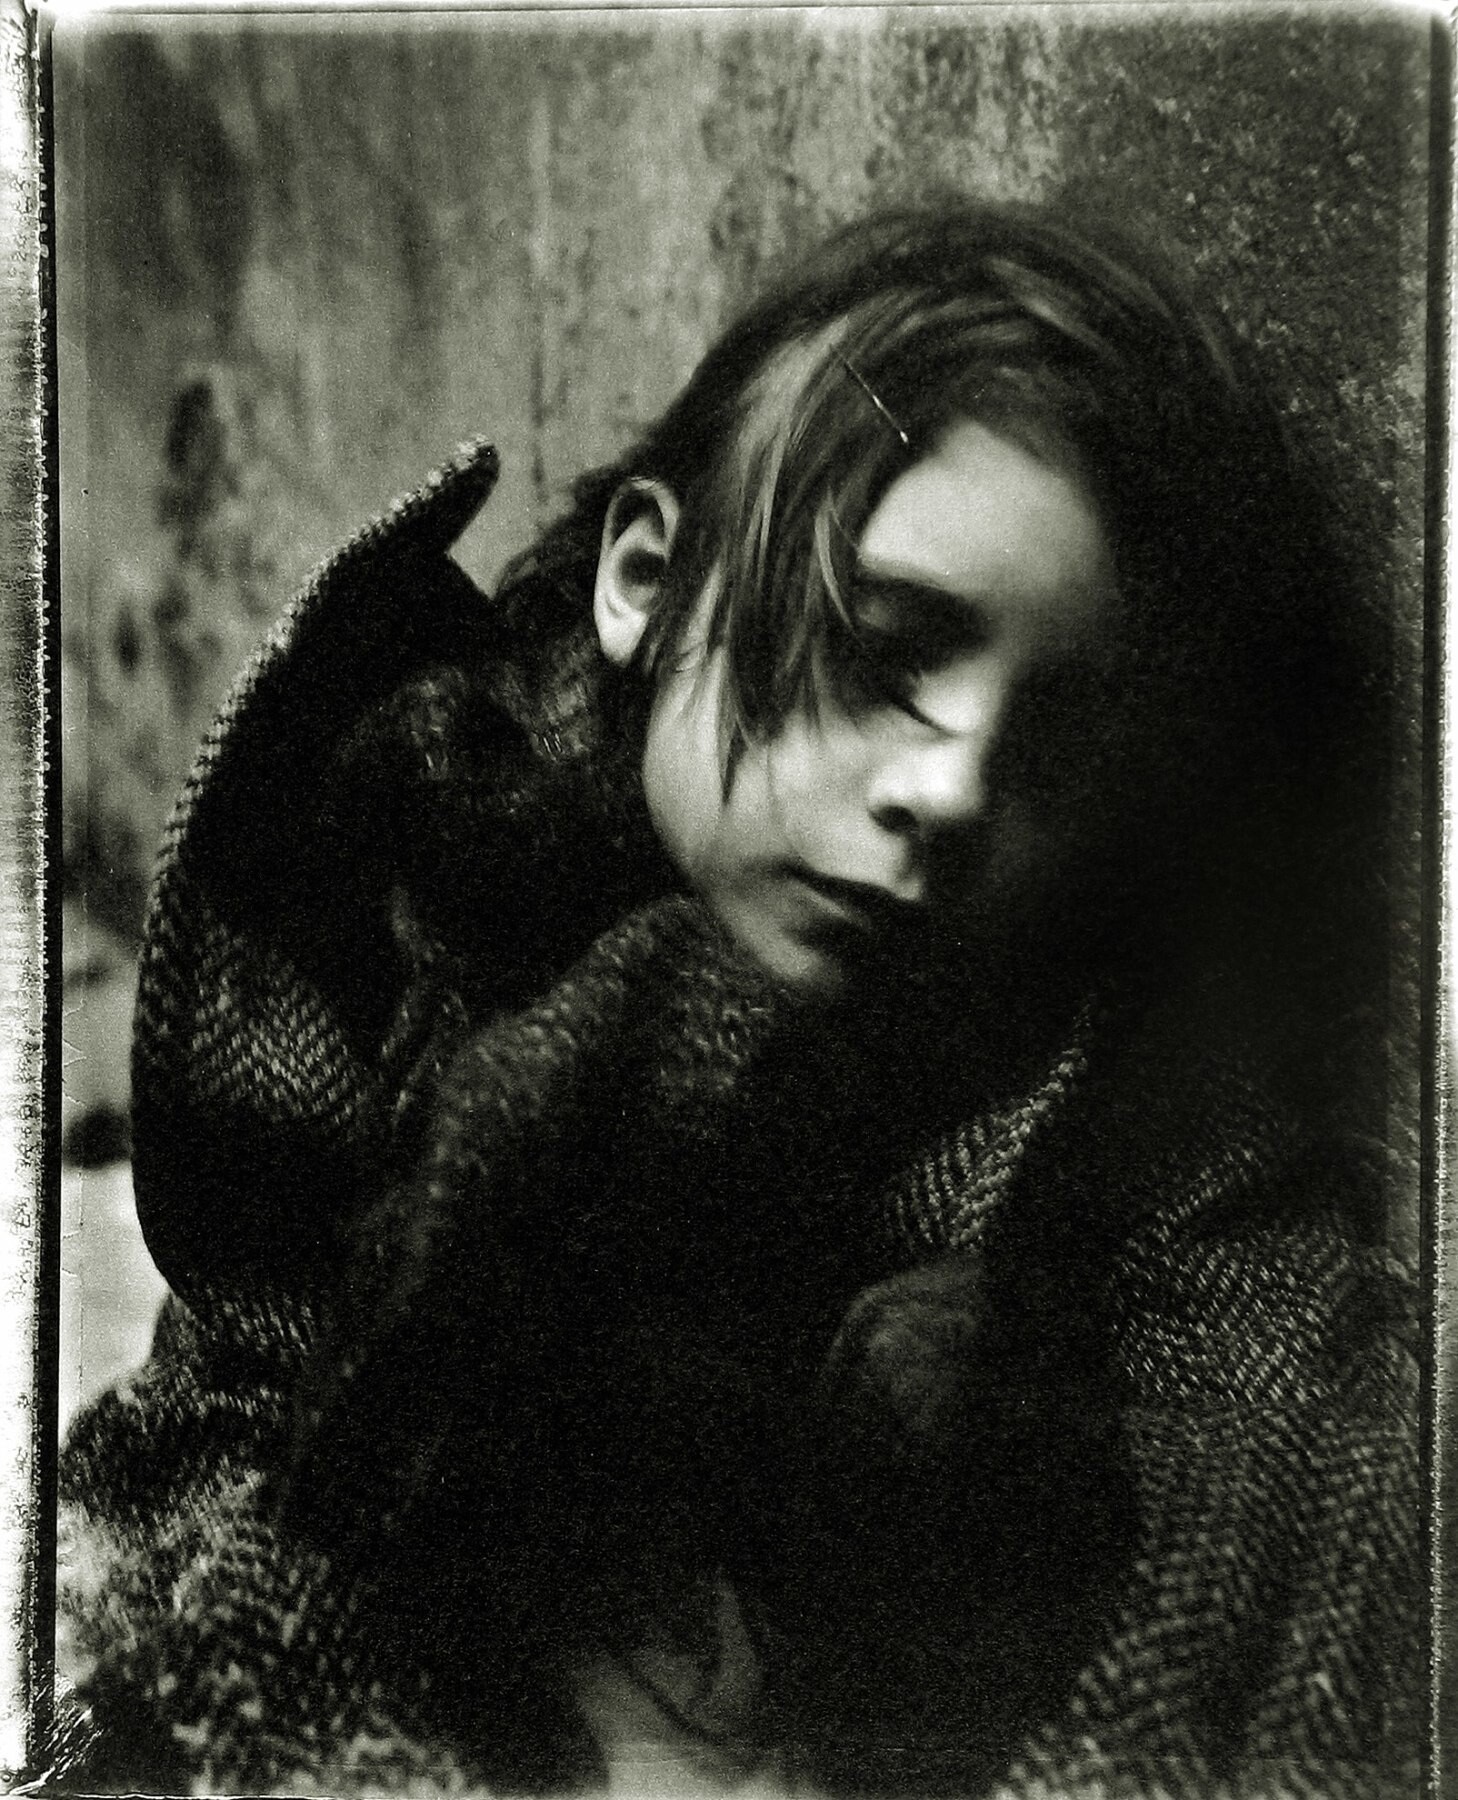 Замерзшая, подавленная, она укрывается под мостом у железной дороги, зажигает спичку, чтобы согреть онемевшие пальцы, потом еще и еще, на секунду закрывает глаза, мечтает. 2000 год. Фотограф Сара Мун